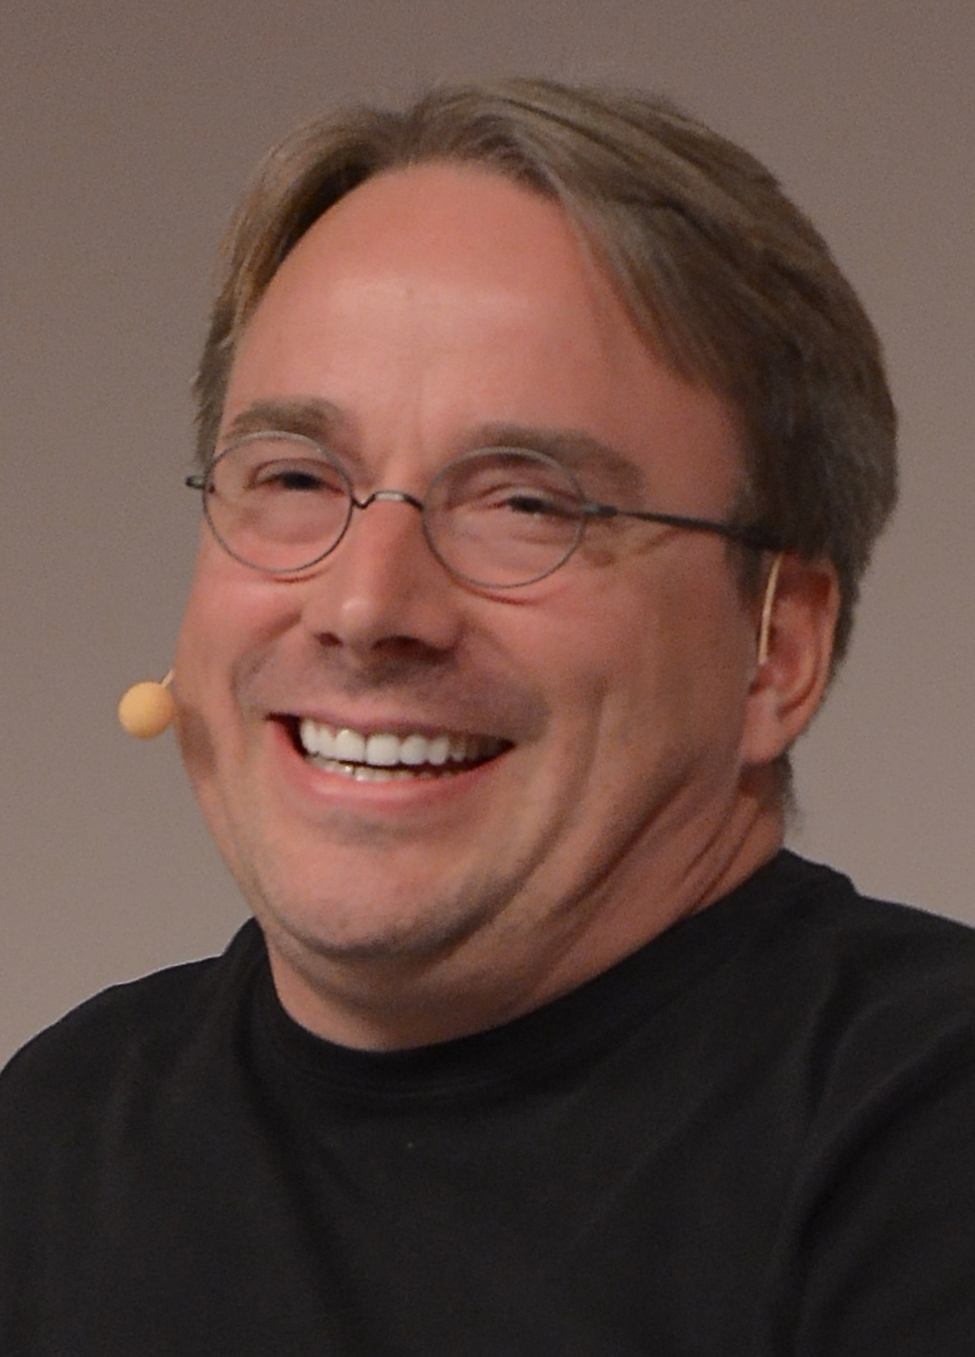 auteur Linus Torvalds de la citation Une partie de Linux était que je devais communiquer beaucoup plus au lieu d'être simplement un geek devant un ordinateur.